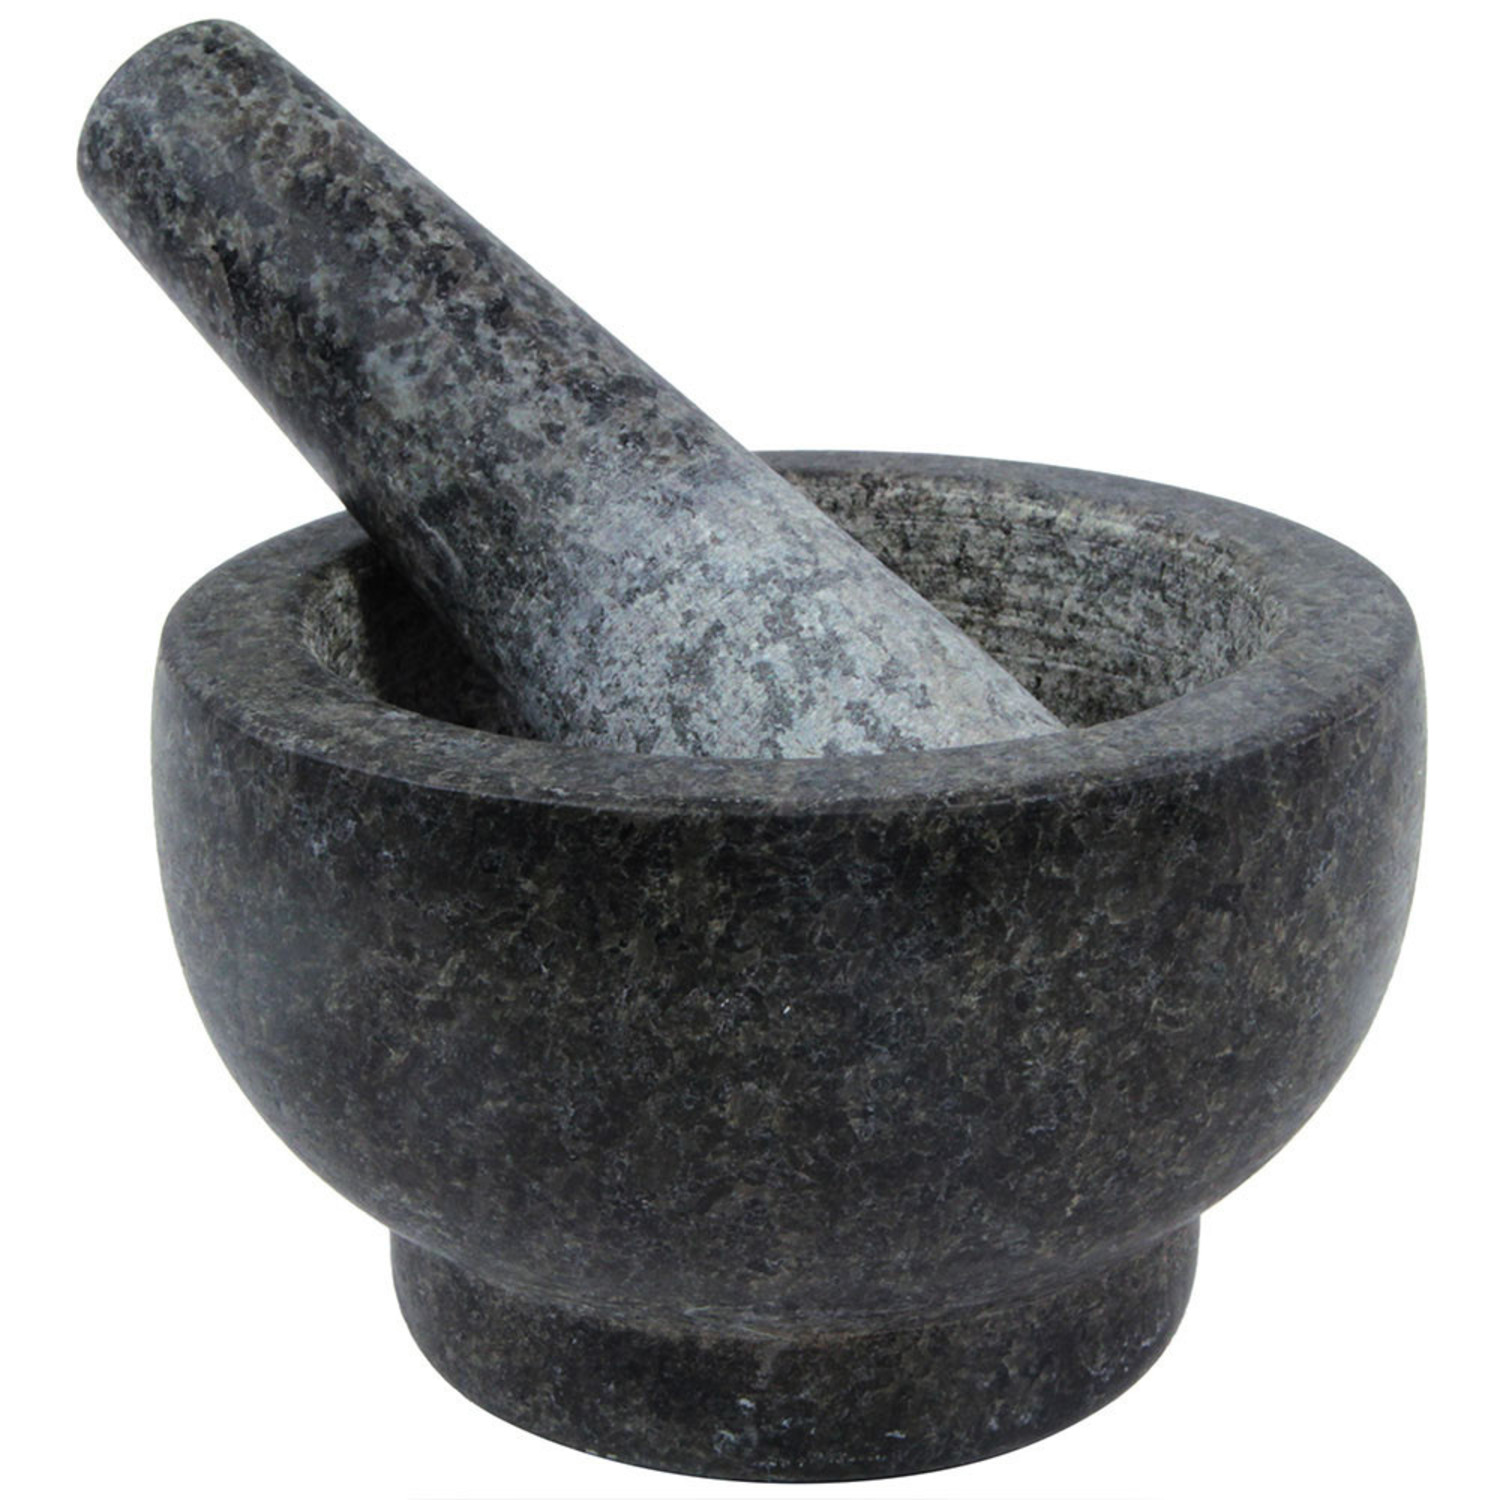 Mortar & Pestle Set (Black Granite) for Your Kitchen